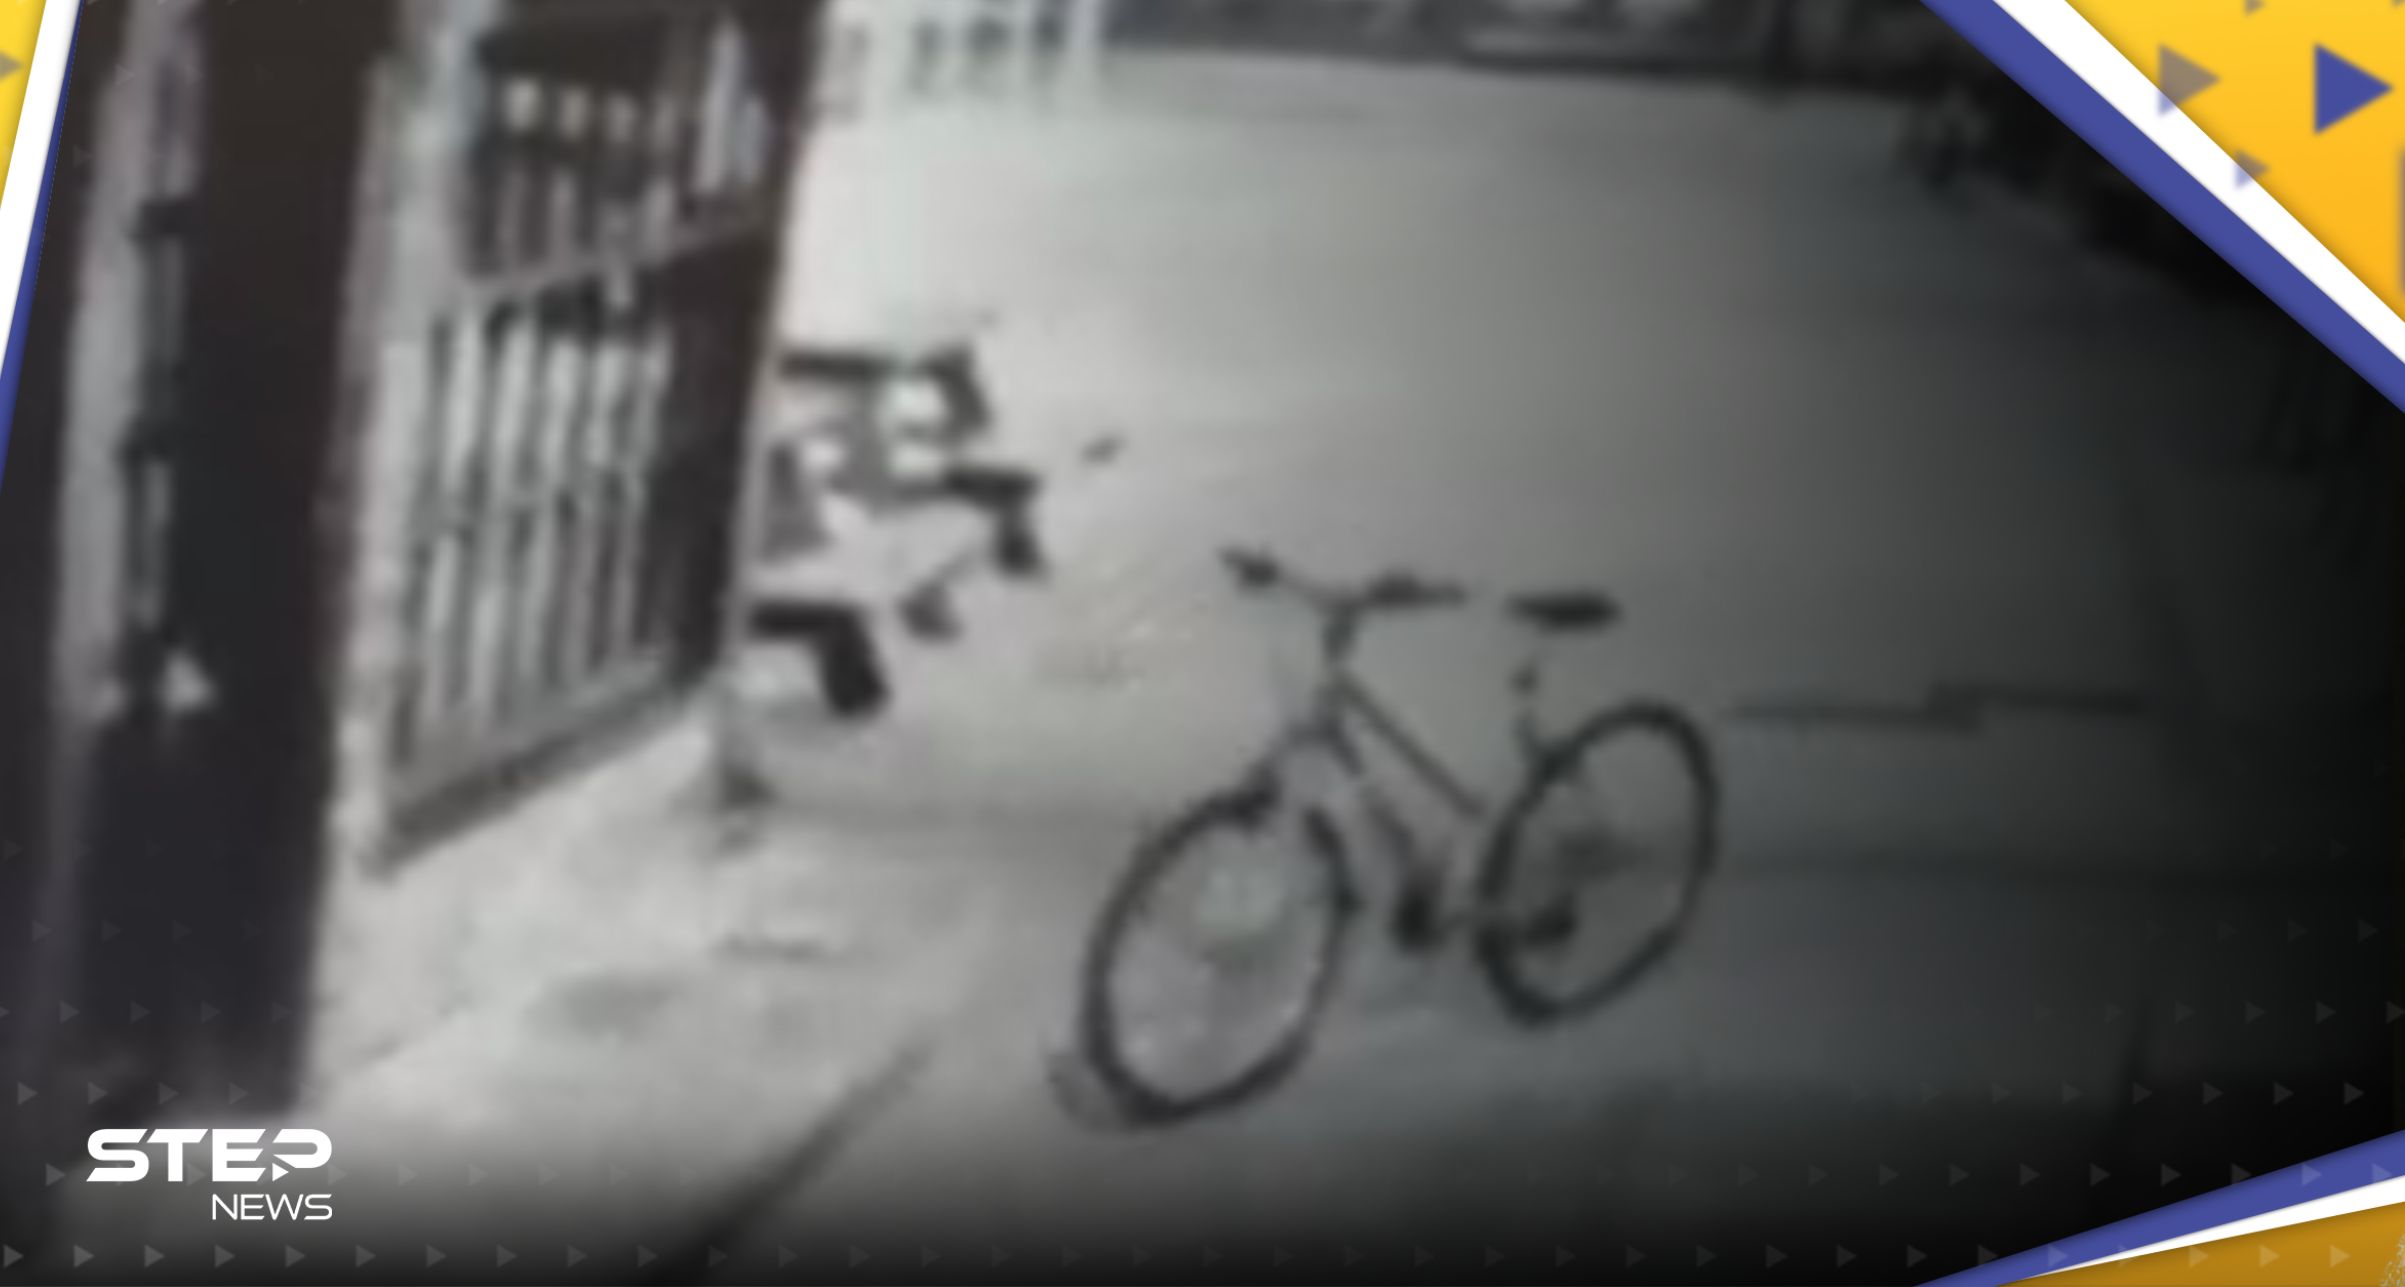 فيديو لدراجة تسير بمفردها يثير الجدل حول وجود "أشباح".. وصحيفة تعلق